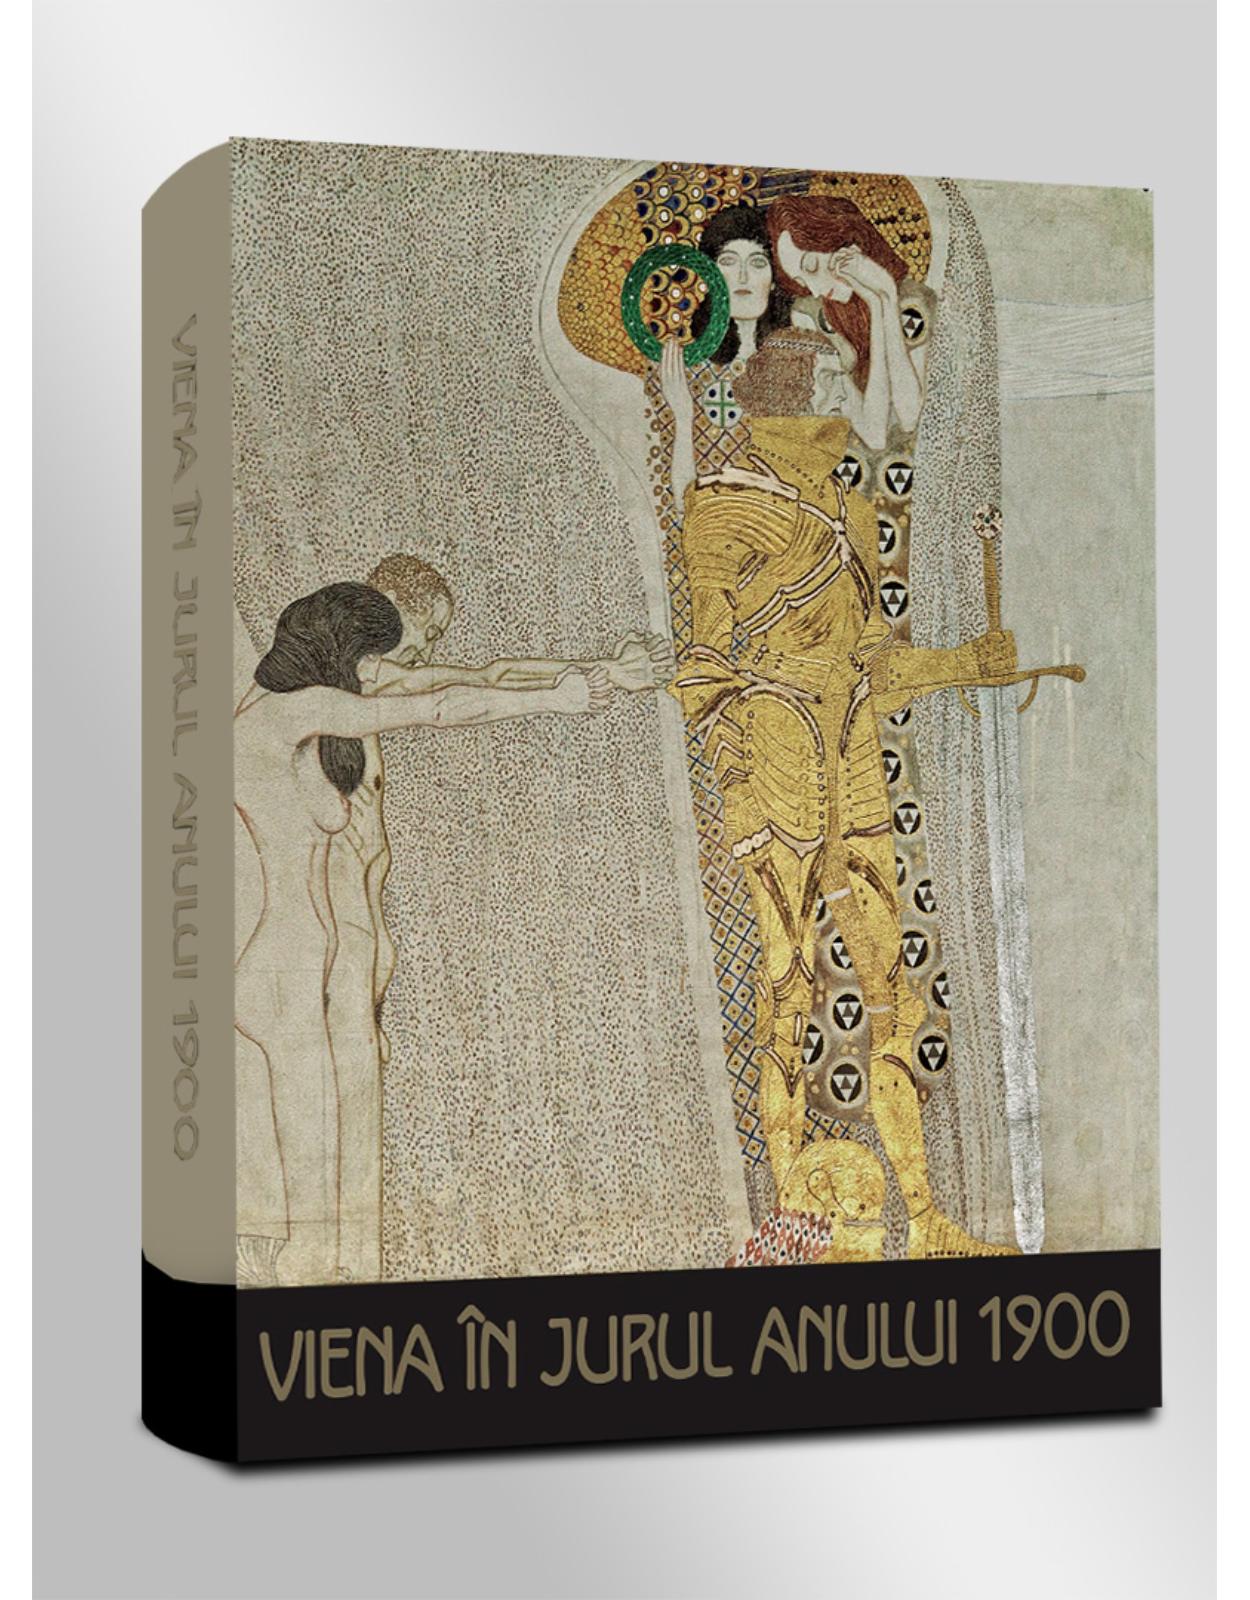 Album de arta- Viena in jurul anului 1900